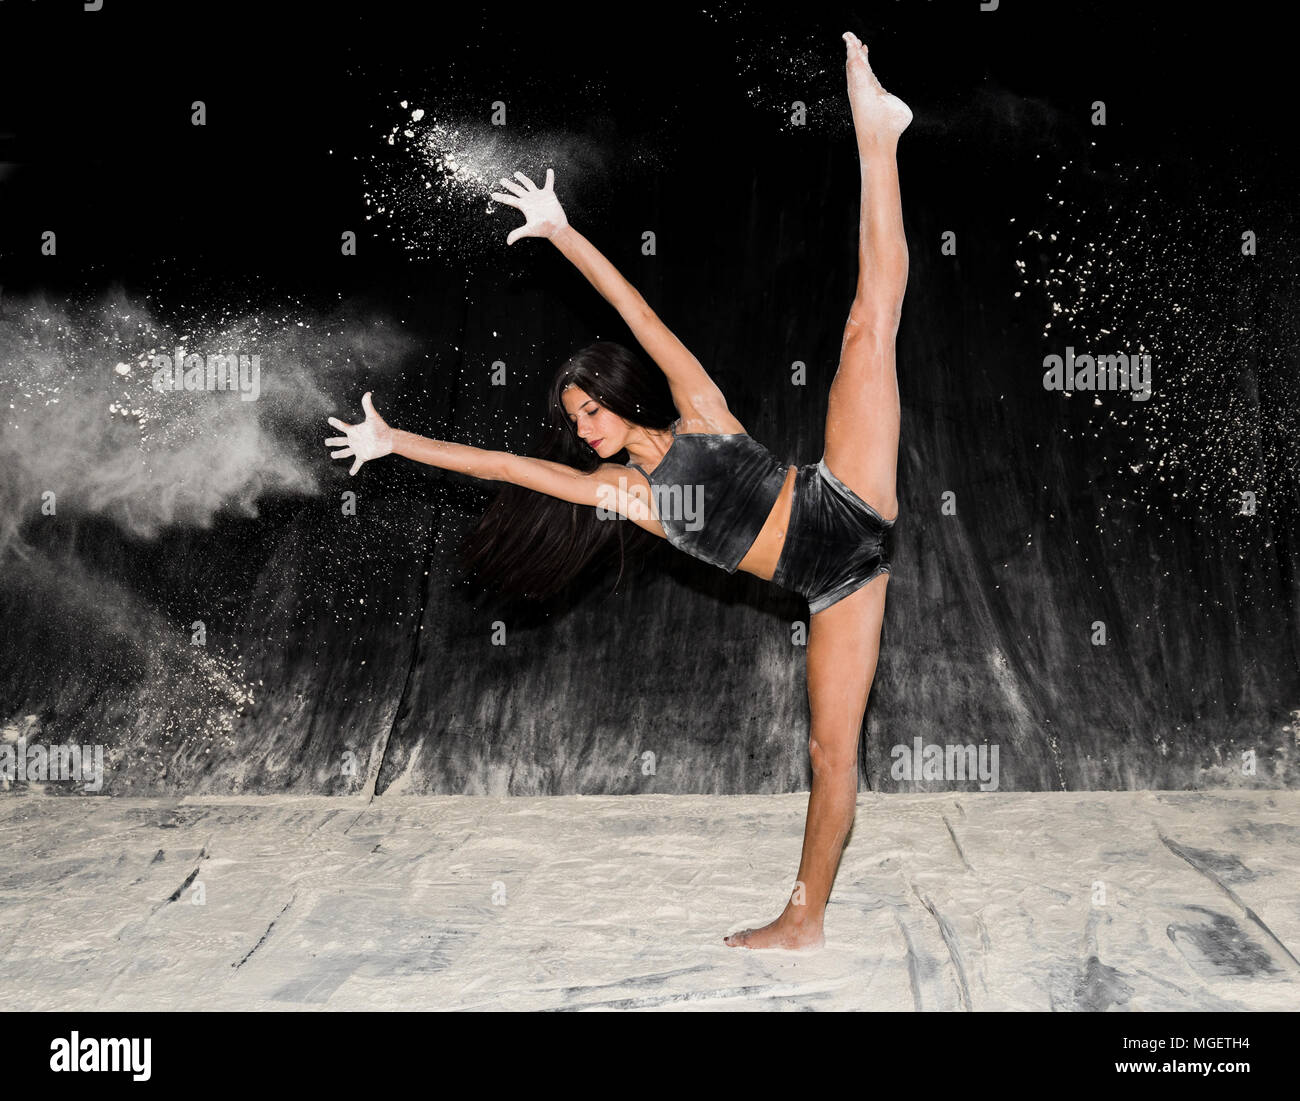 Belle adolescente expressive danse ballet contemporain sur scène avec un fond noir et la farine blanche Banque D'Images